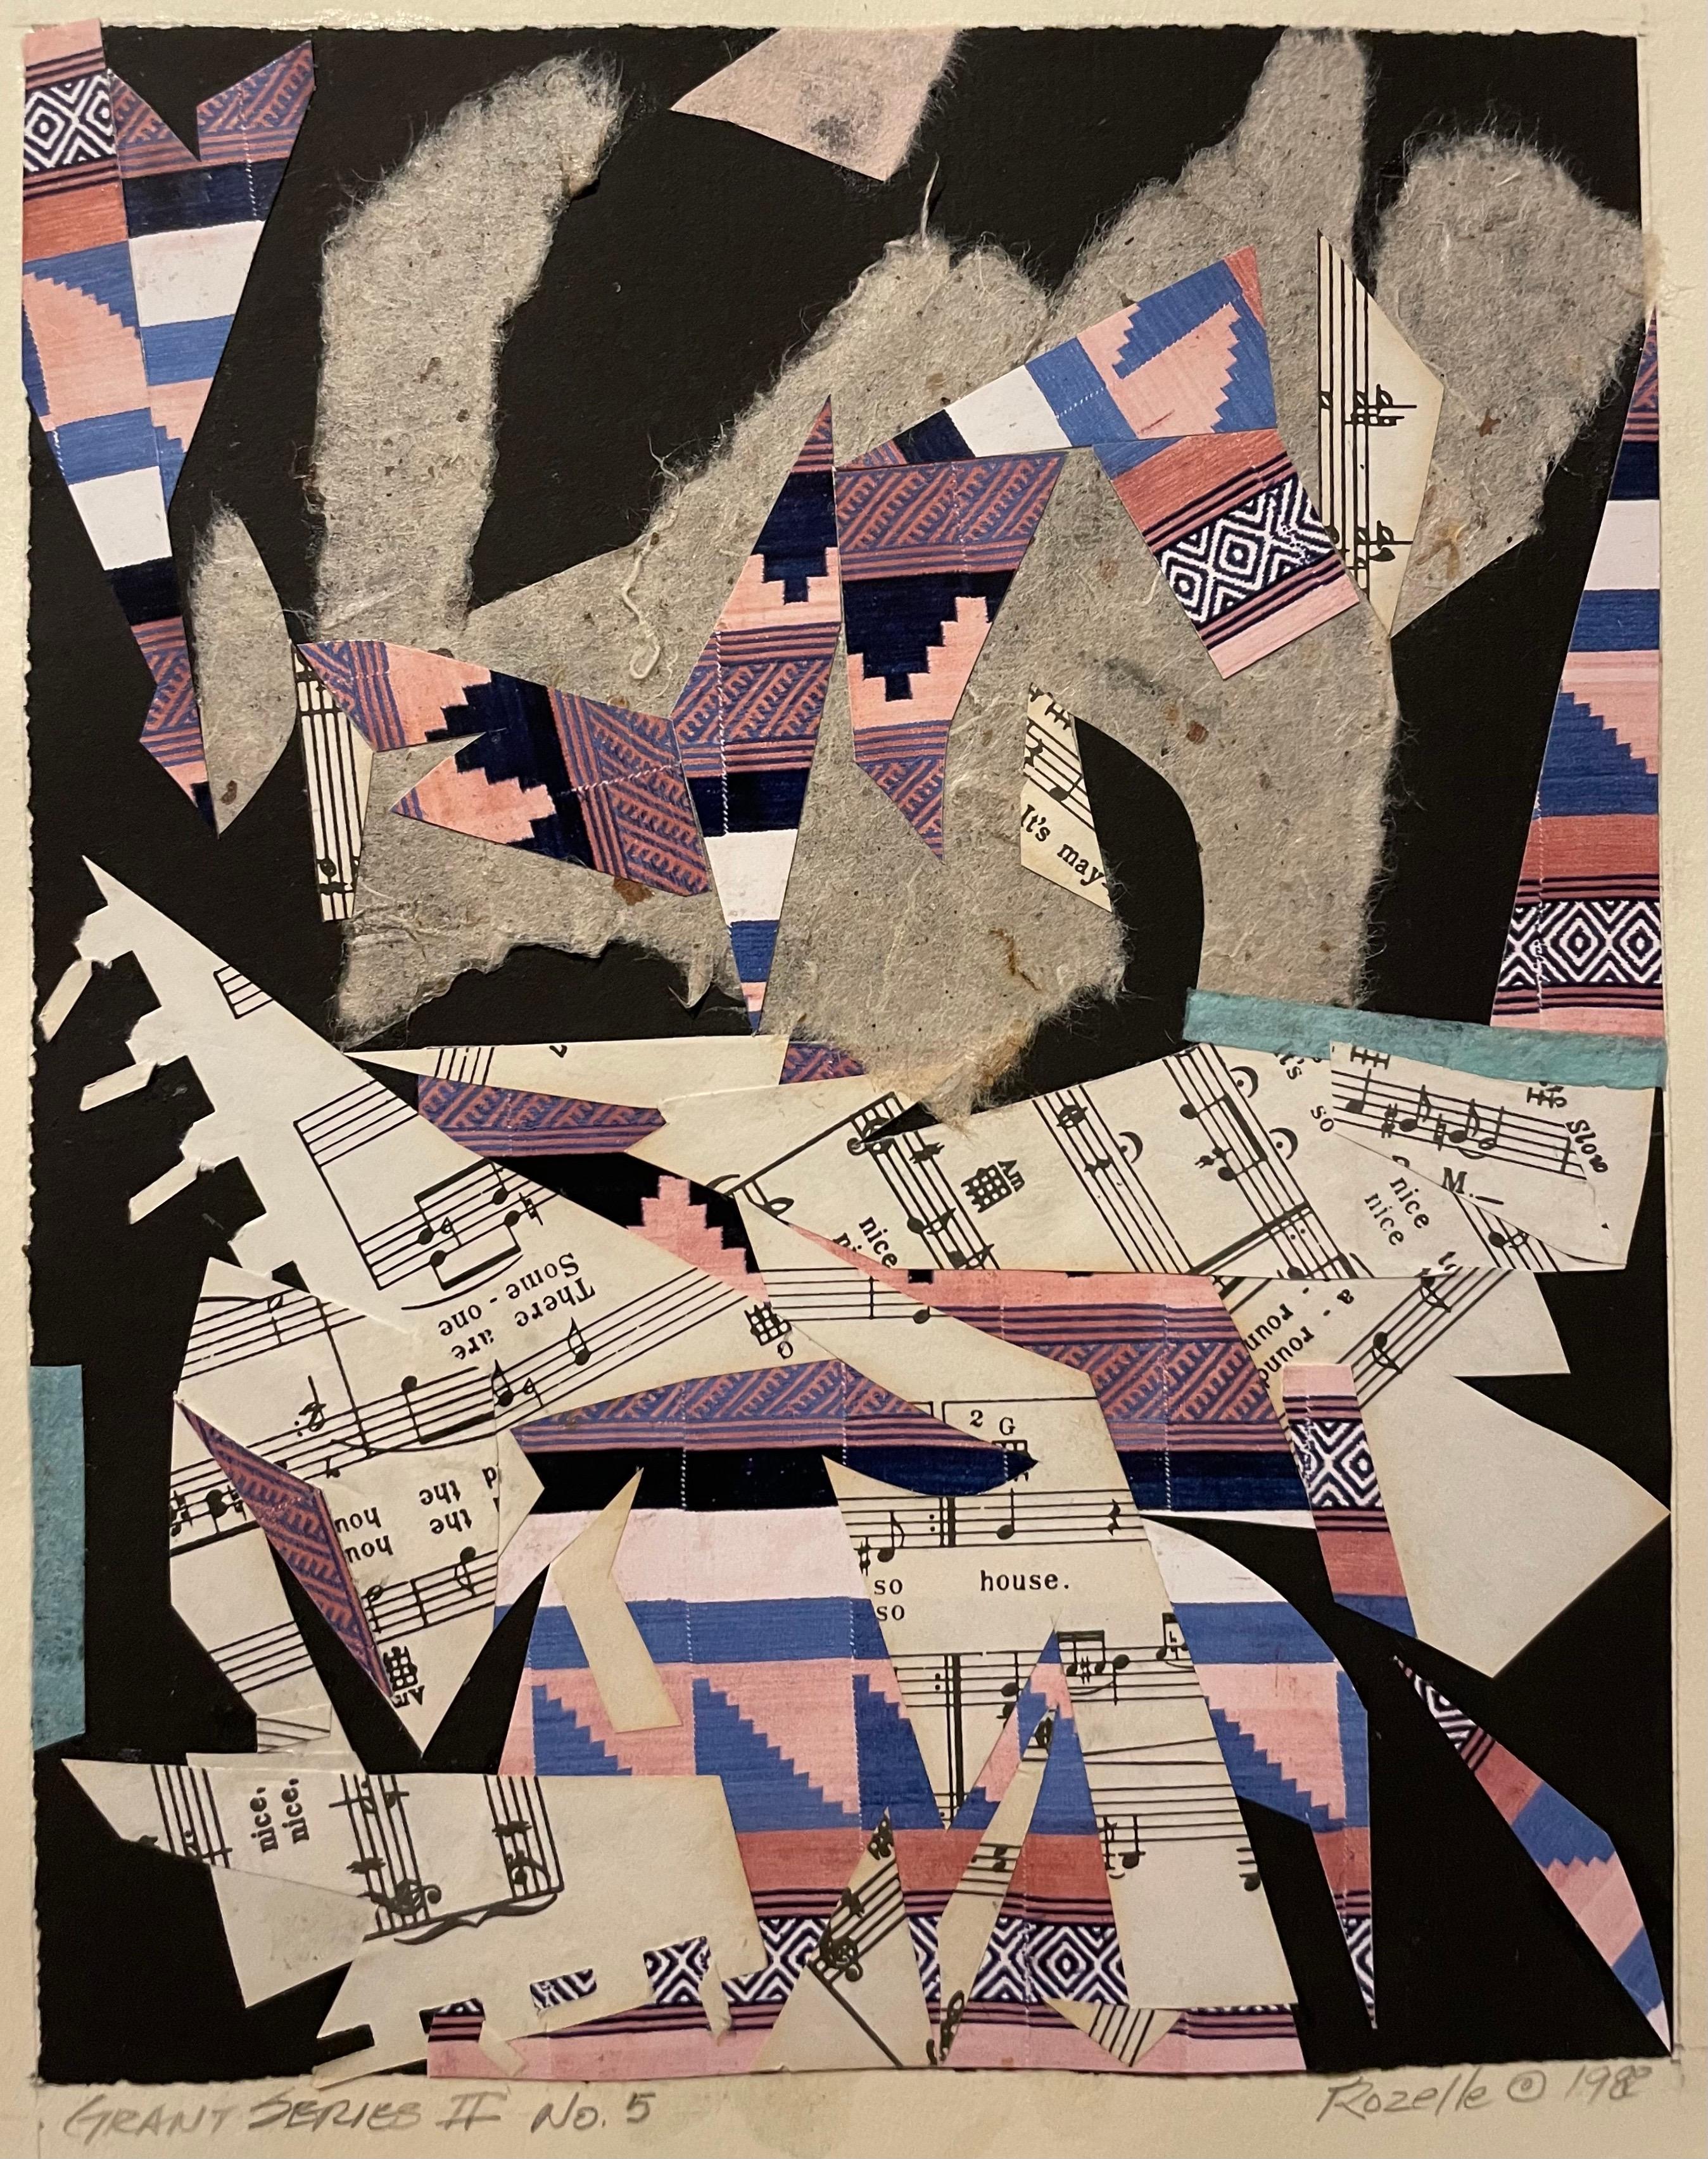 Torn Paper Collage-Gemälde des afroamerikanischen Künstlers John Rozelle aus der Grant-Serie